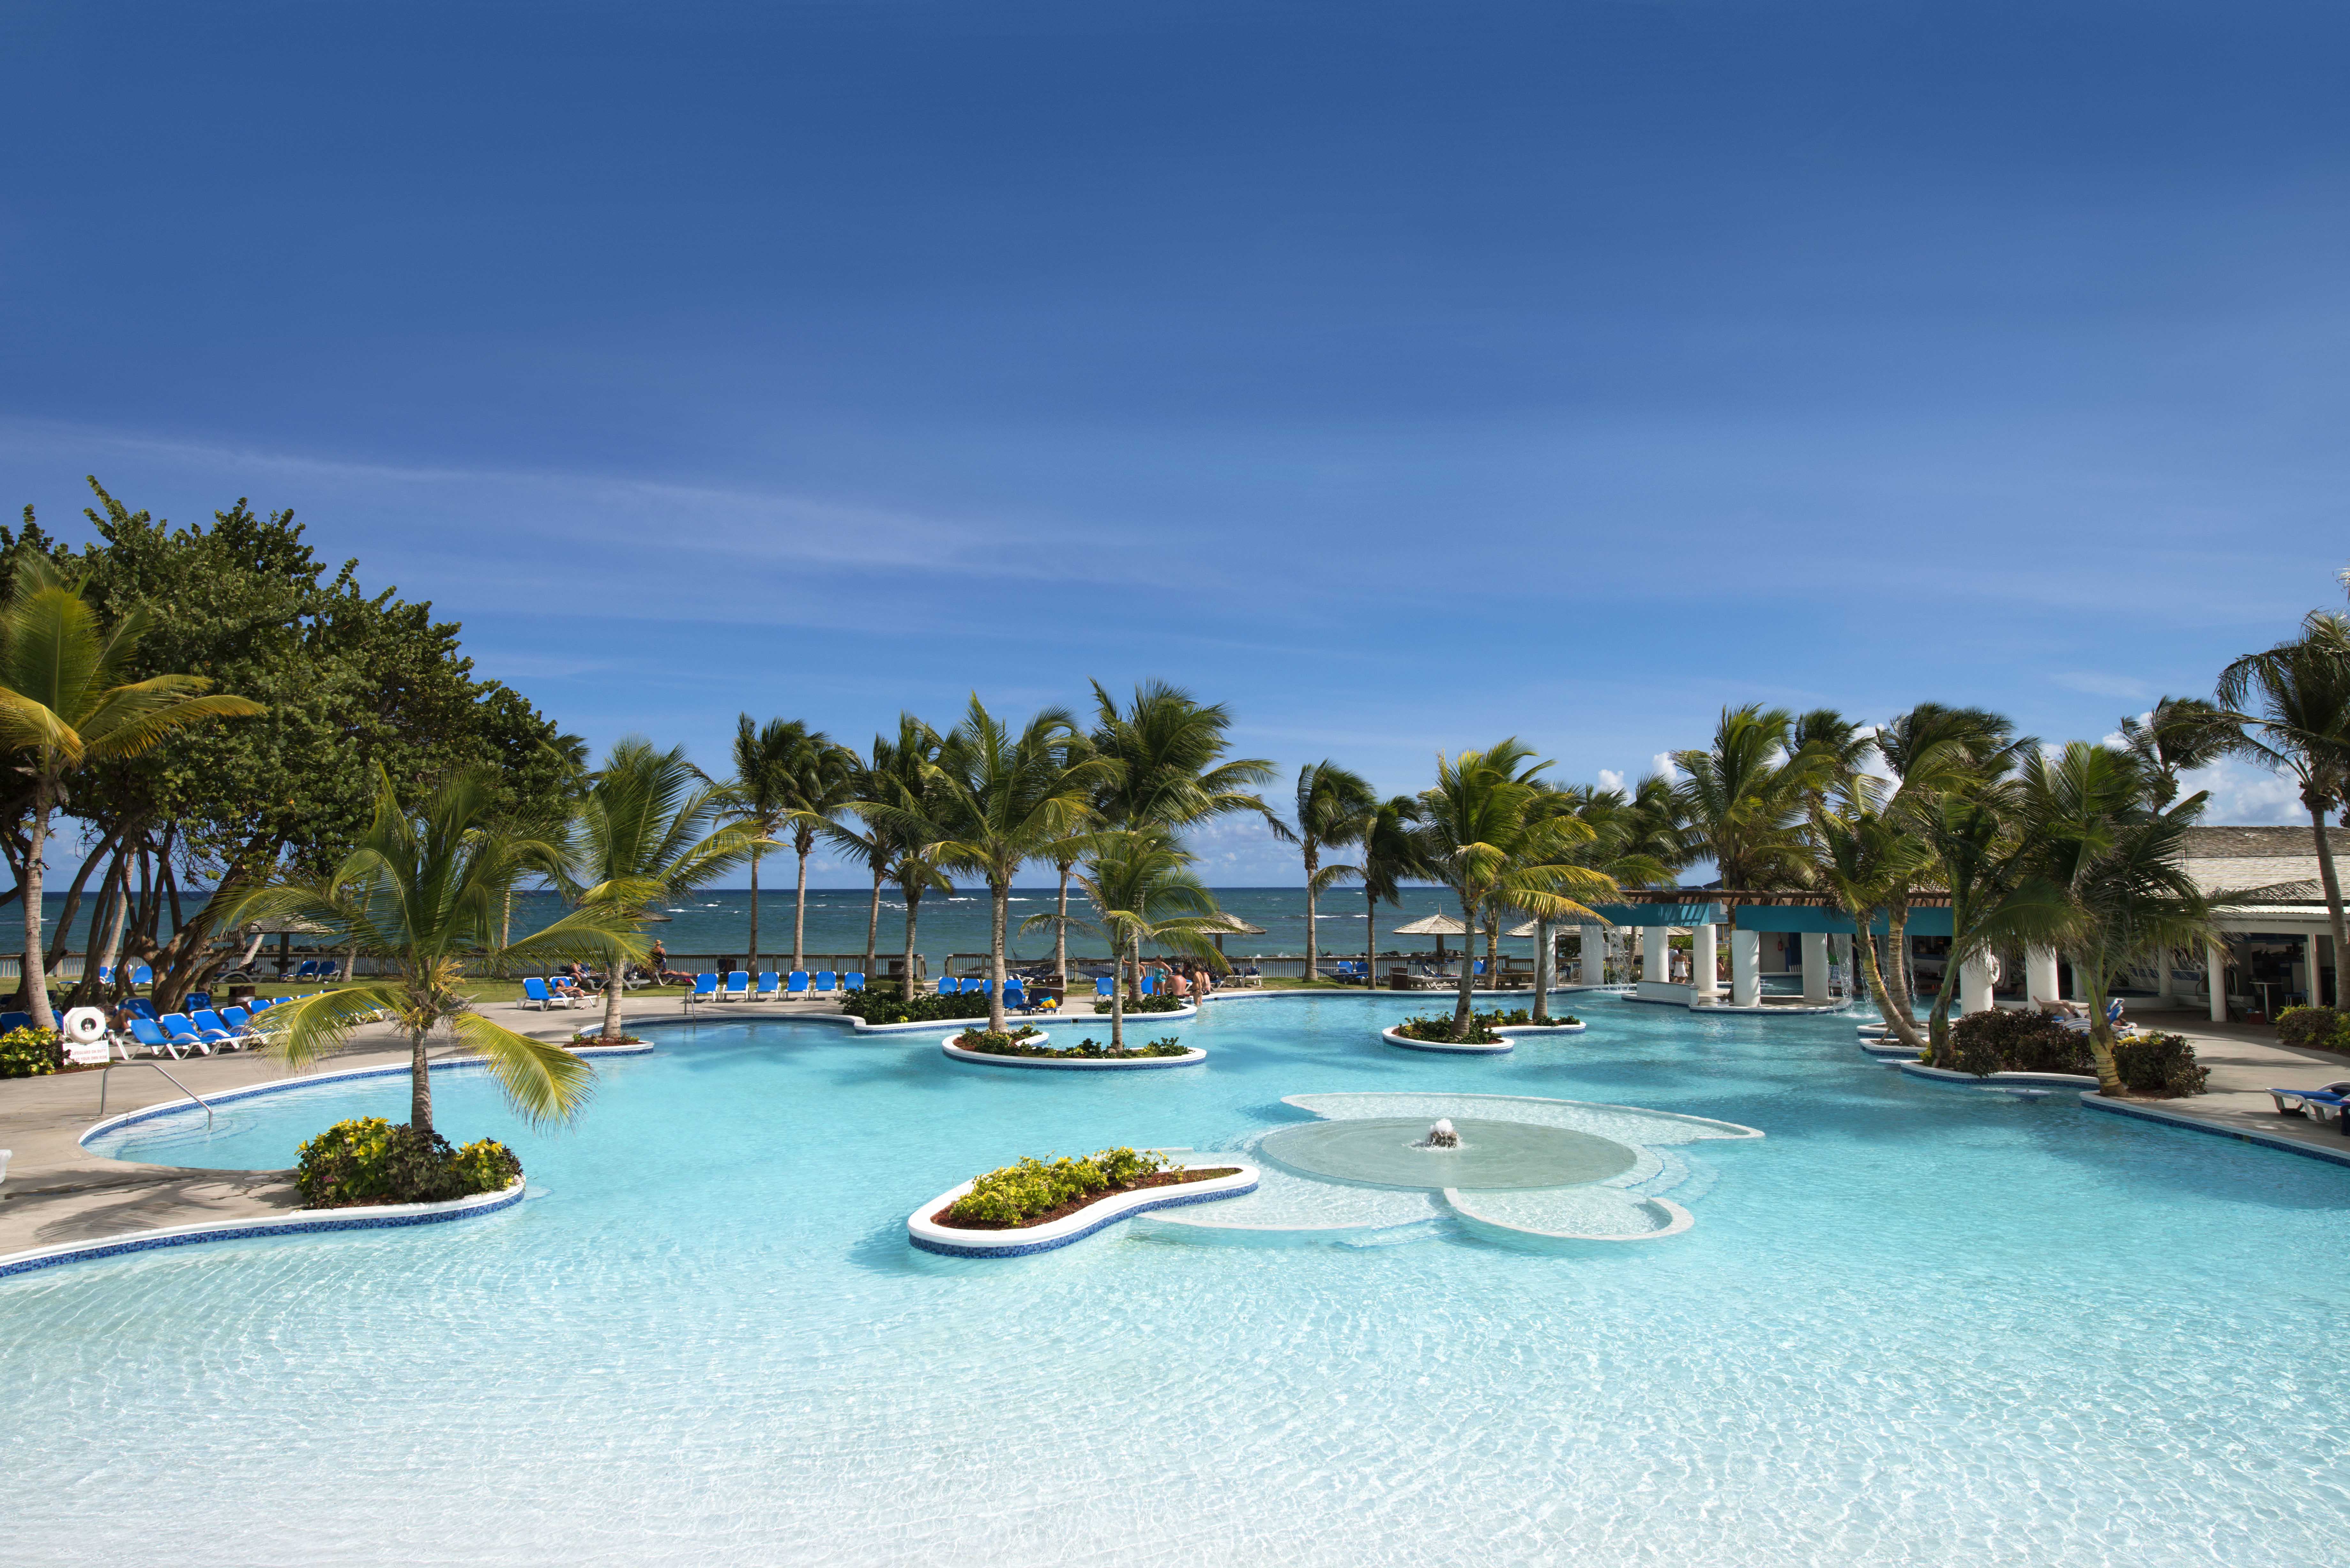 Saint Lucia’s AllInclusive Coconut Bay Beach Resort & Spa Celebrates